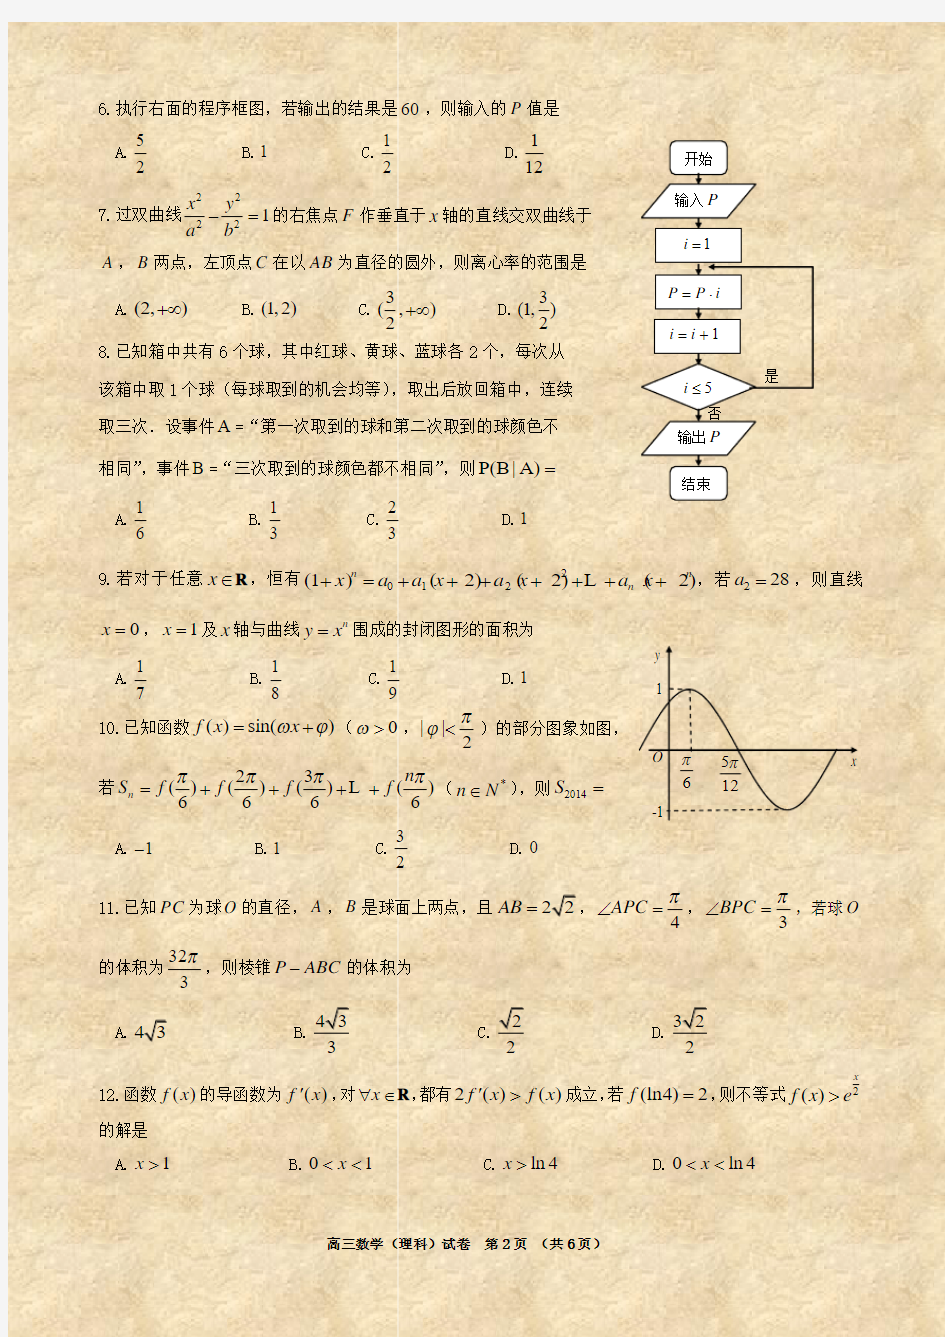 2014年沈阳市高中三年级教学质量监测(三)